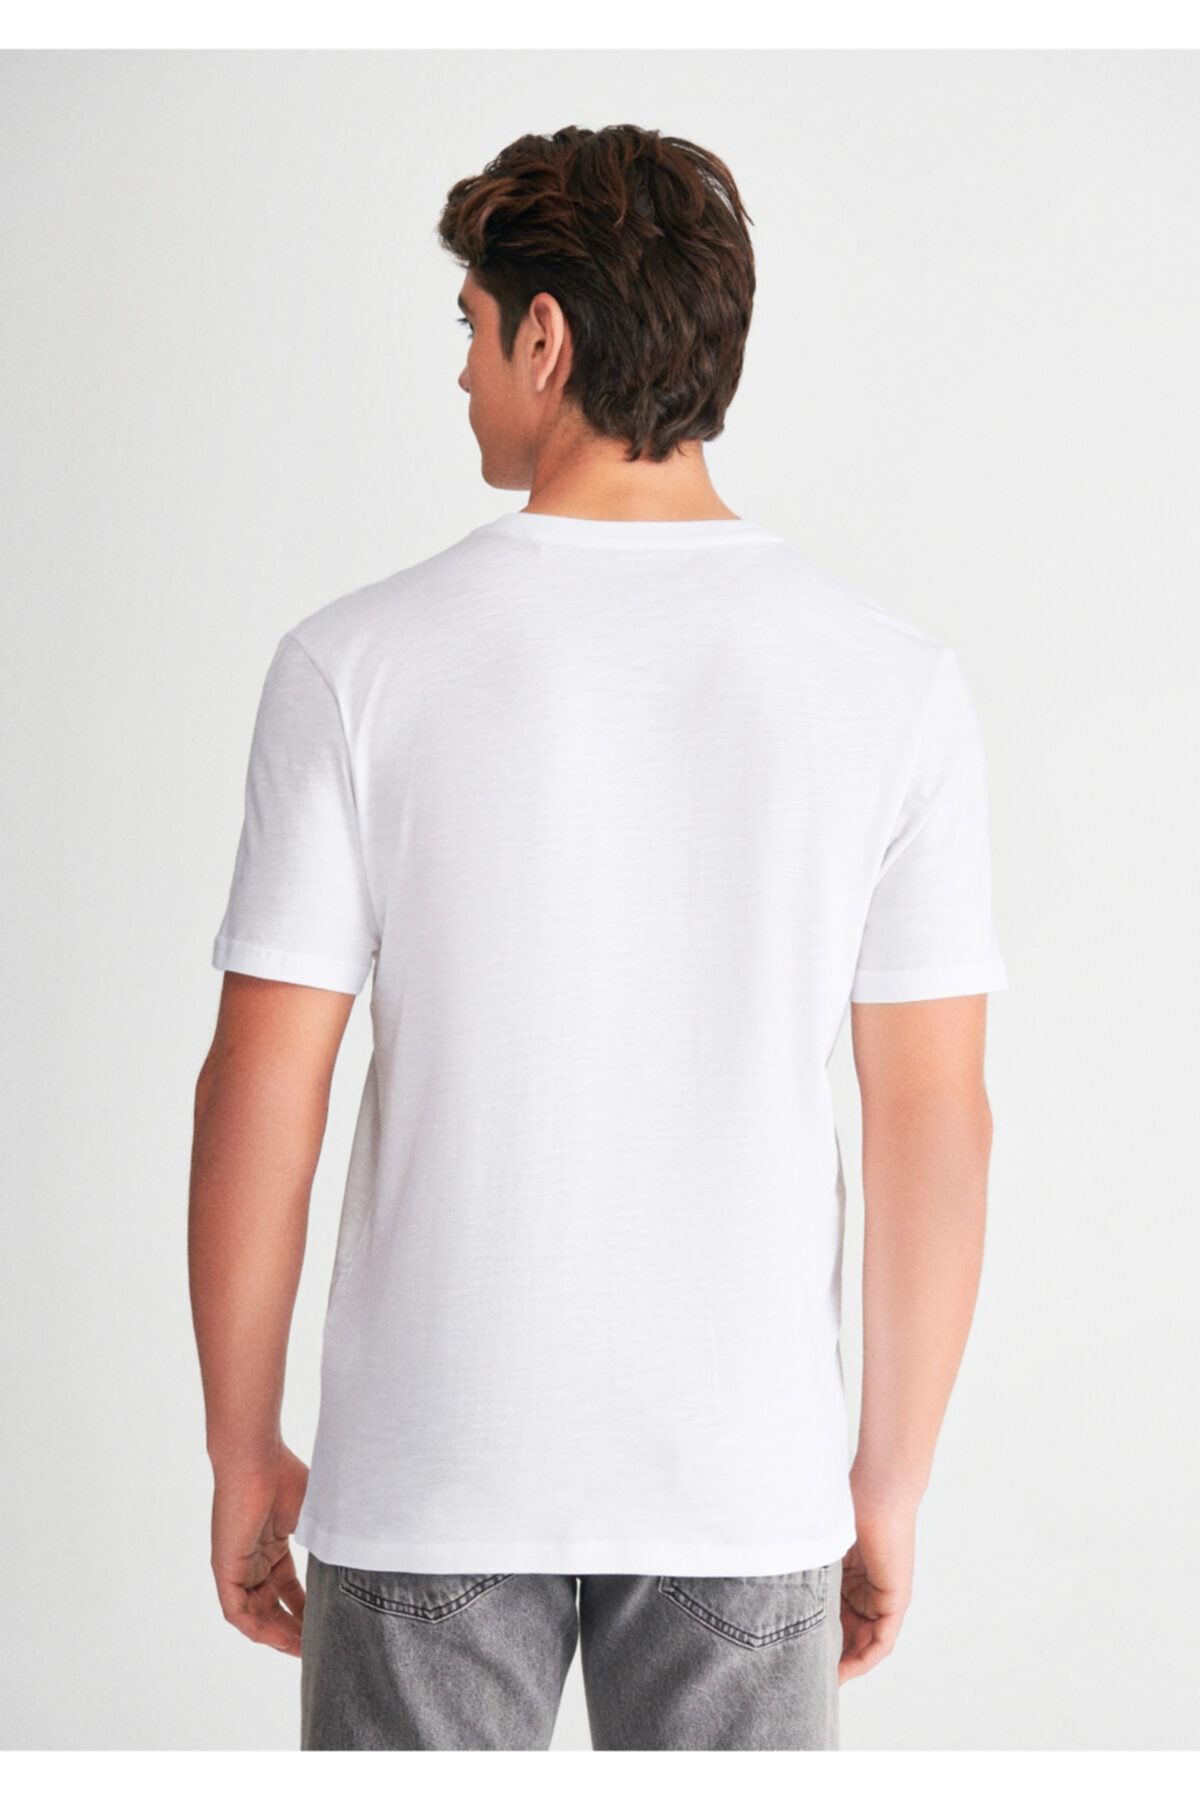 Mavi تی شرت سفید چاپ شده مناسب / برش معمولی 0610319-620